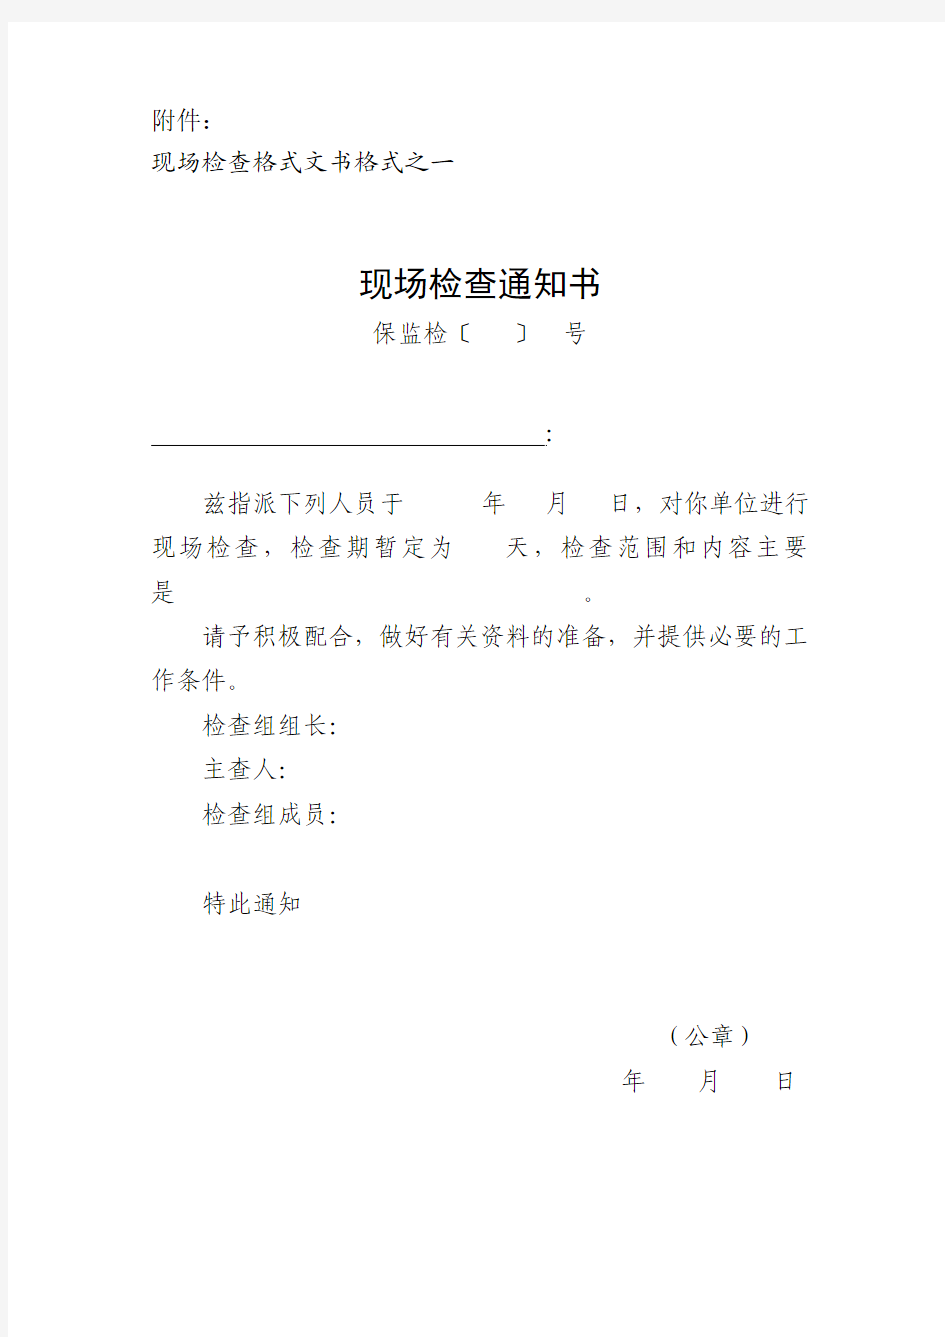 保监发〔2009〕115号中国保监会现场检查工作规程附件